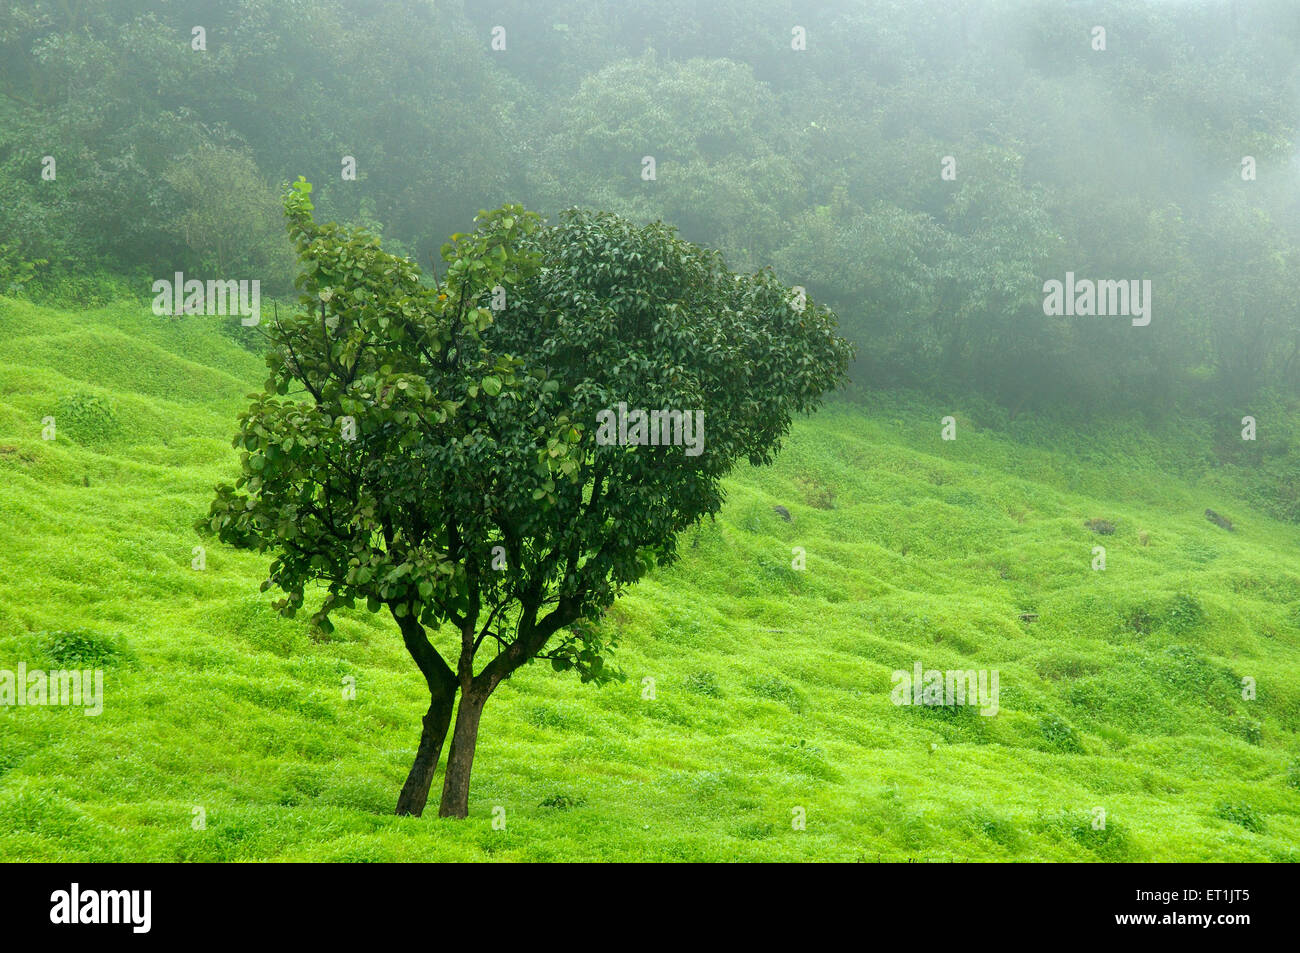 green tree greenery landscape ; Mahabaleshwar ; Maharashtra ; India Stock Photo